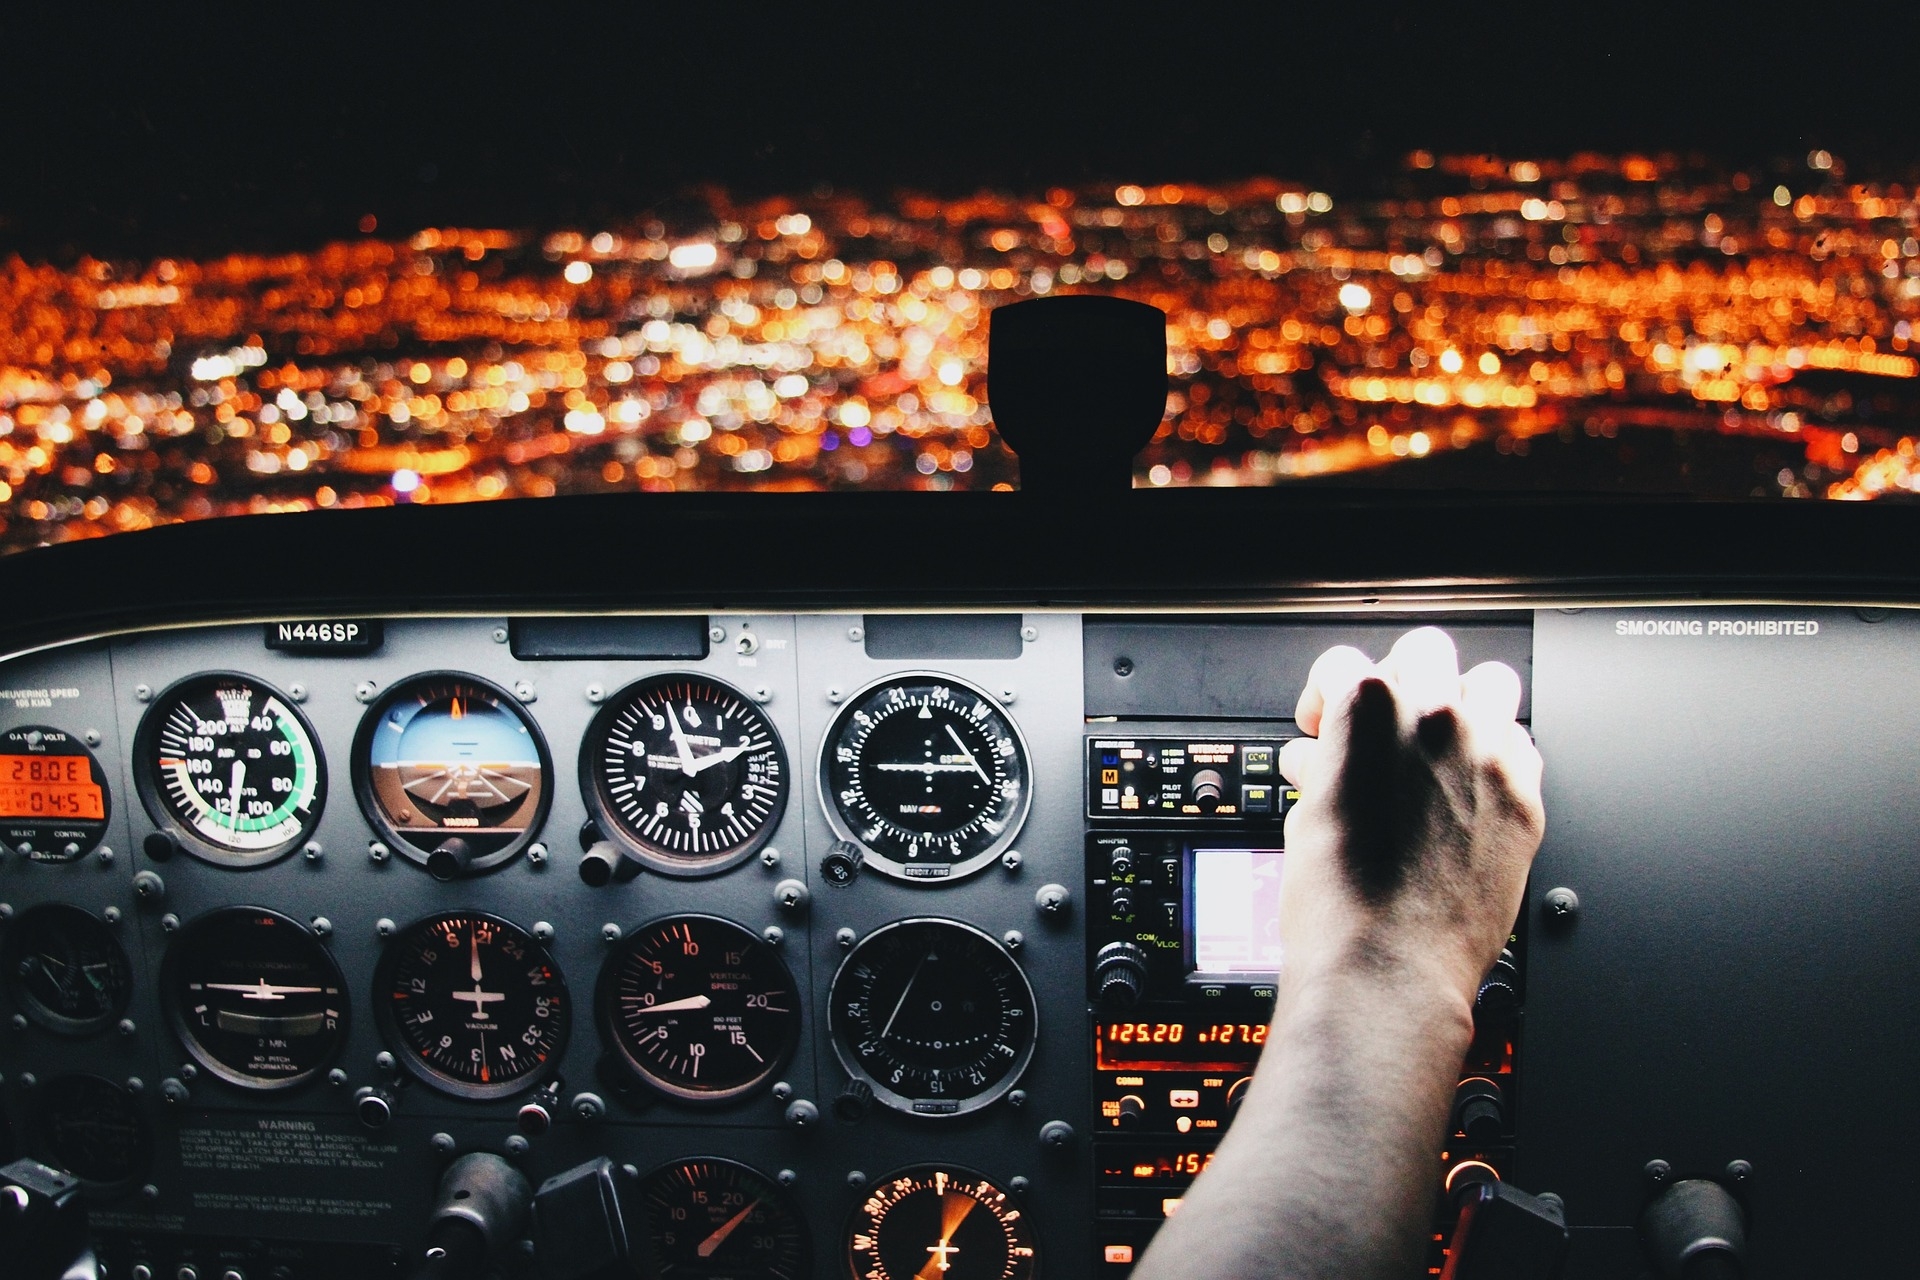 Pilotos devem seguir regras rígidas para exercer corretamente a profissão, garantindo a segurança dos voos.